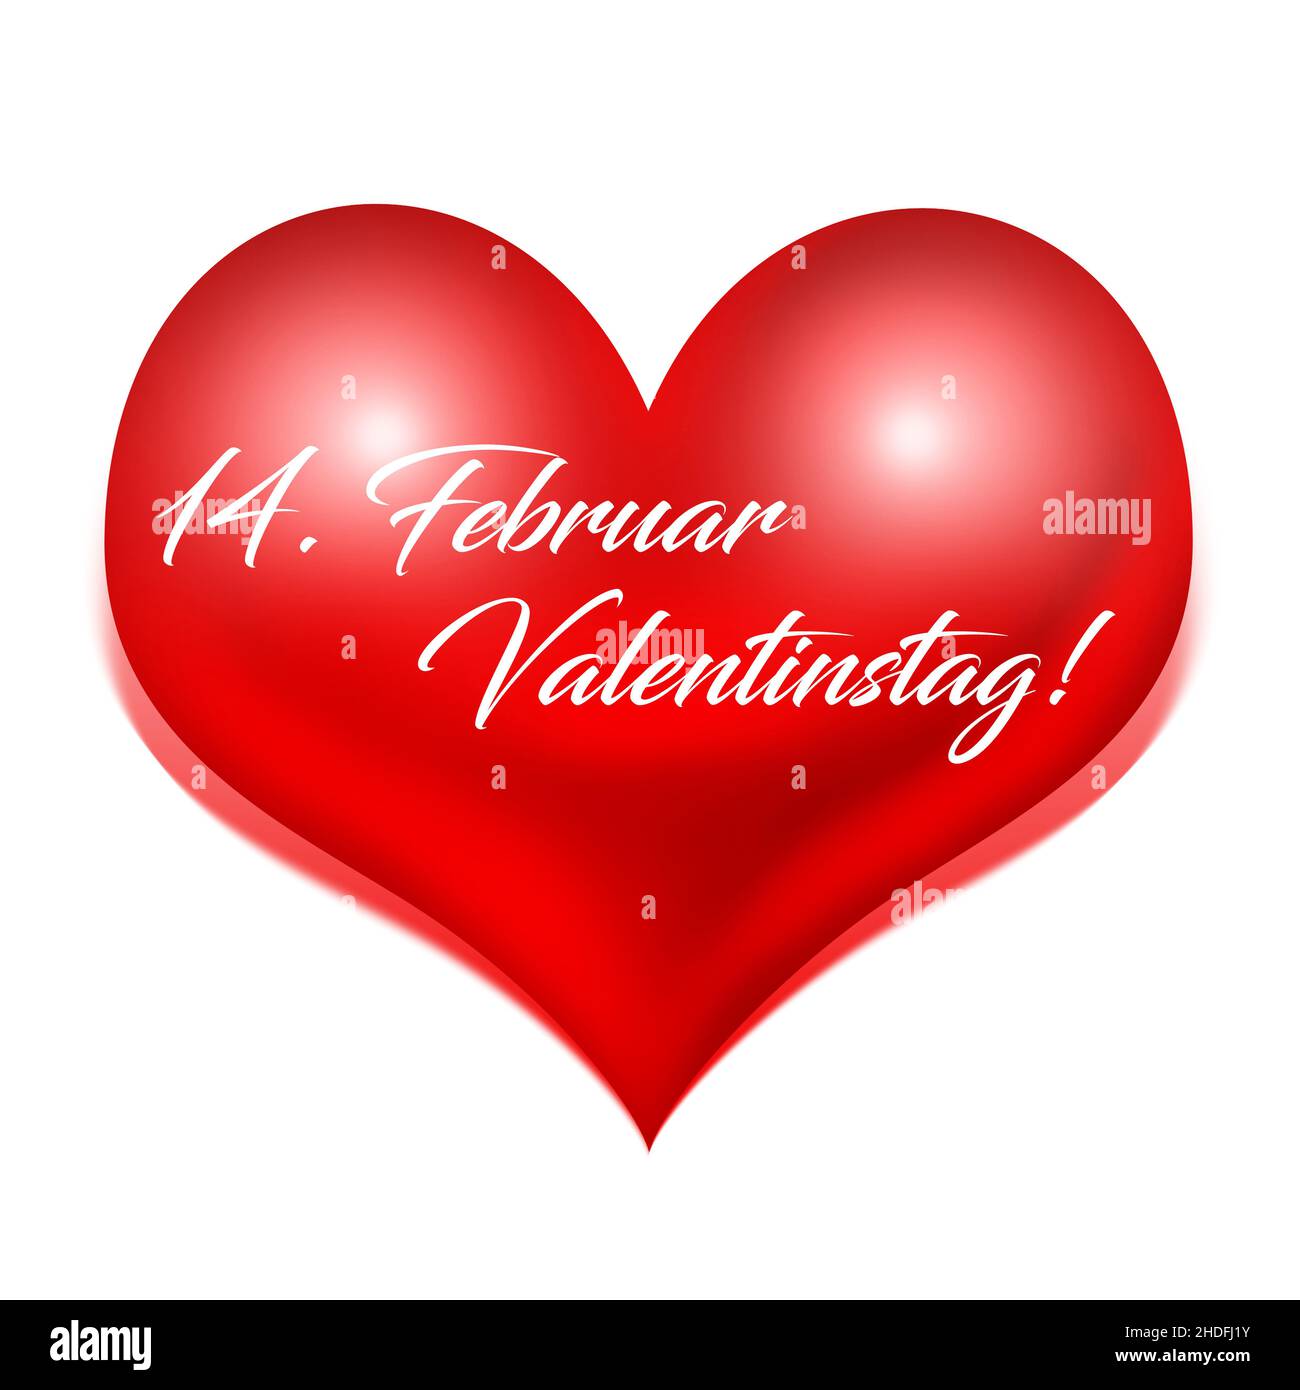 Herz, valentinstag, 14th. februar, Herzen, valentinstag, valentinstag, Valentinstag Stockfoto